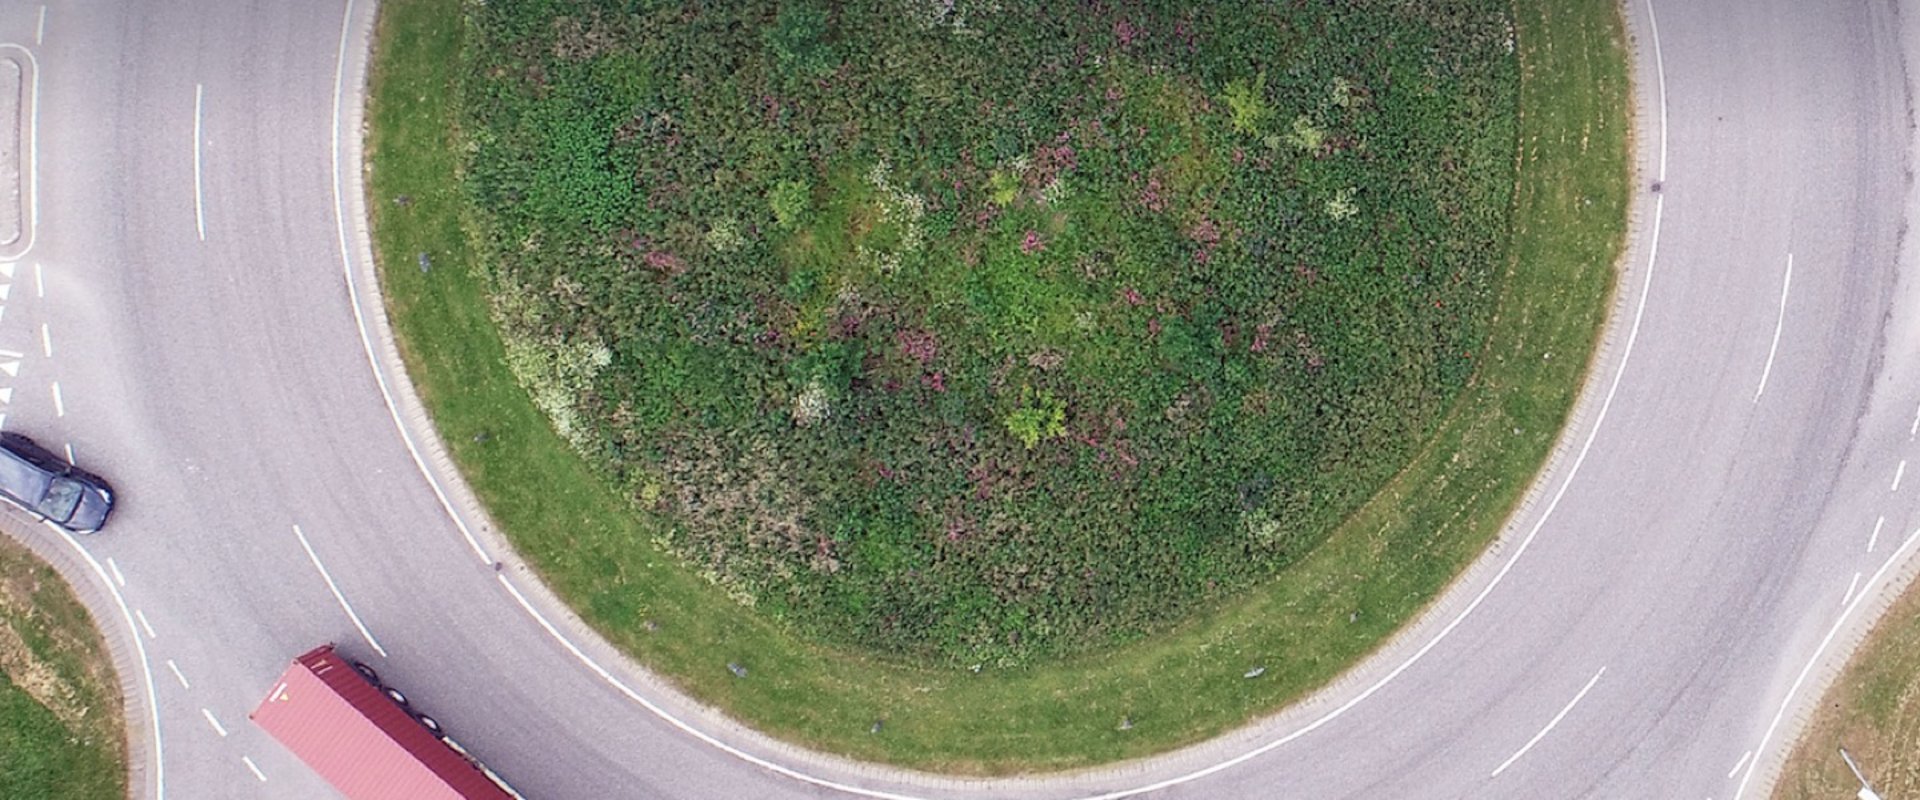 Dronefoto af en rundkørsel med en græsplæne i midten. En blå lastbil med rød anhænger er i rundkørslen nederst i billedet efterfulgt af en mørk personbil, der er på vej ind i rundkørslen i venstre side af billedet